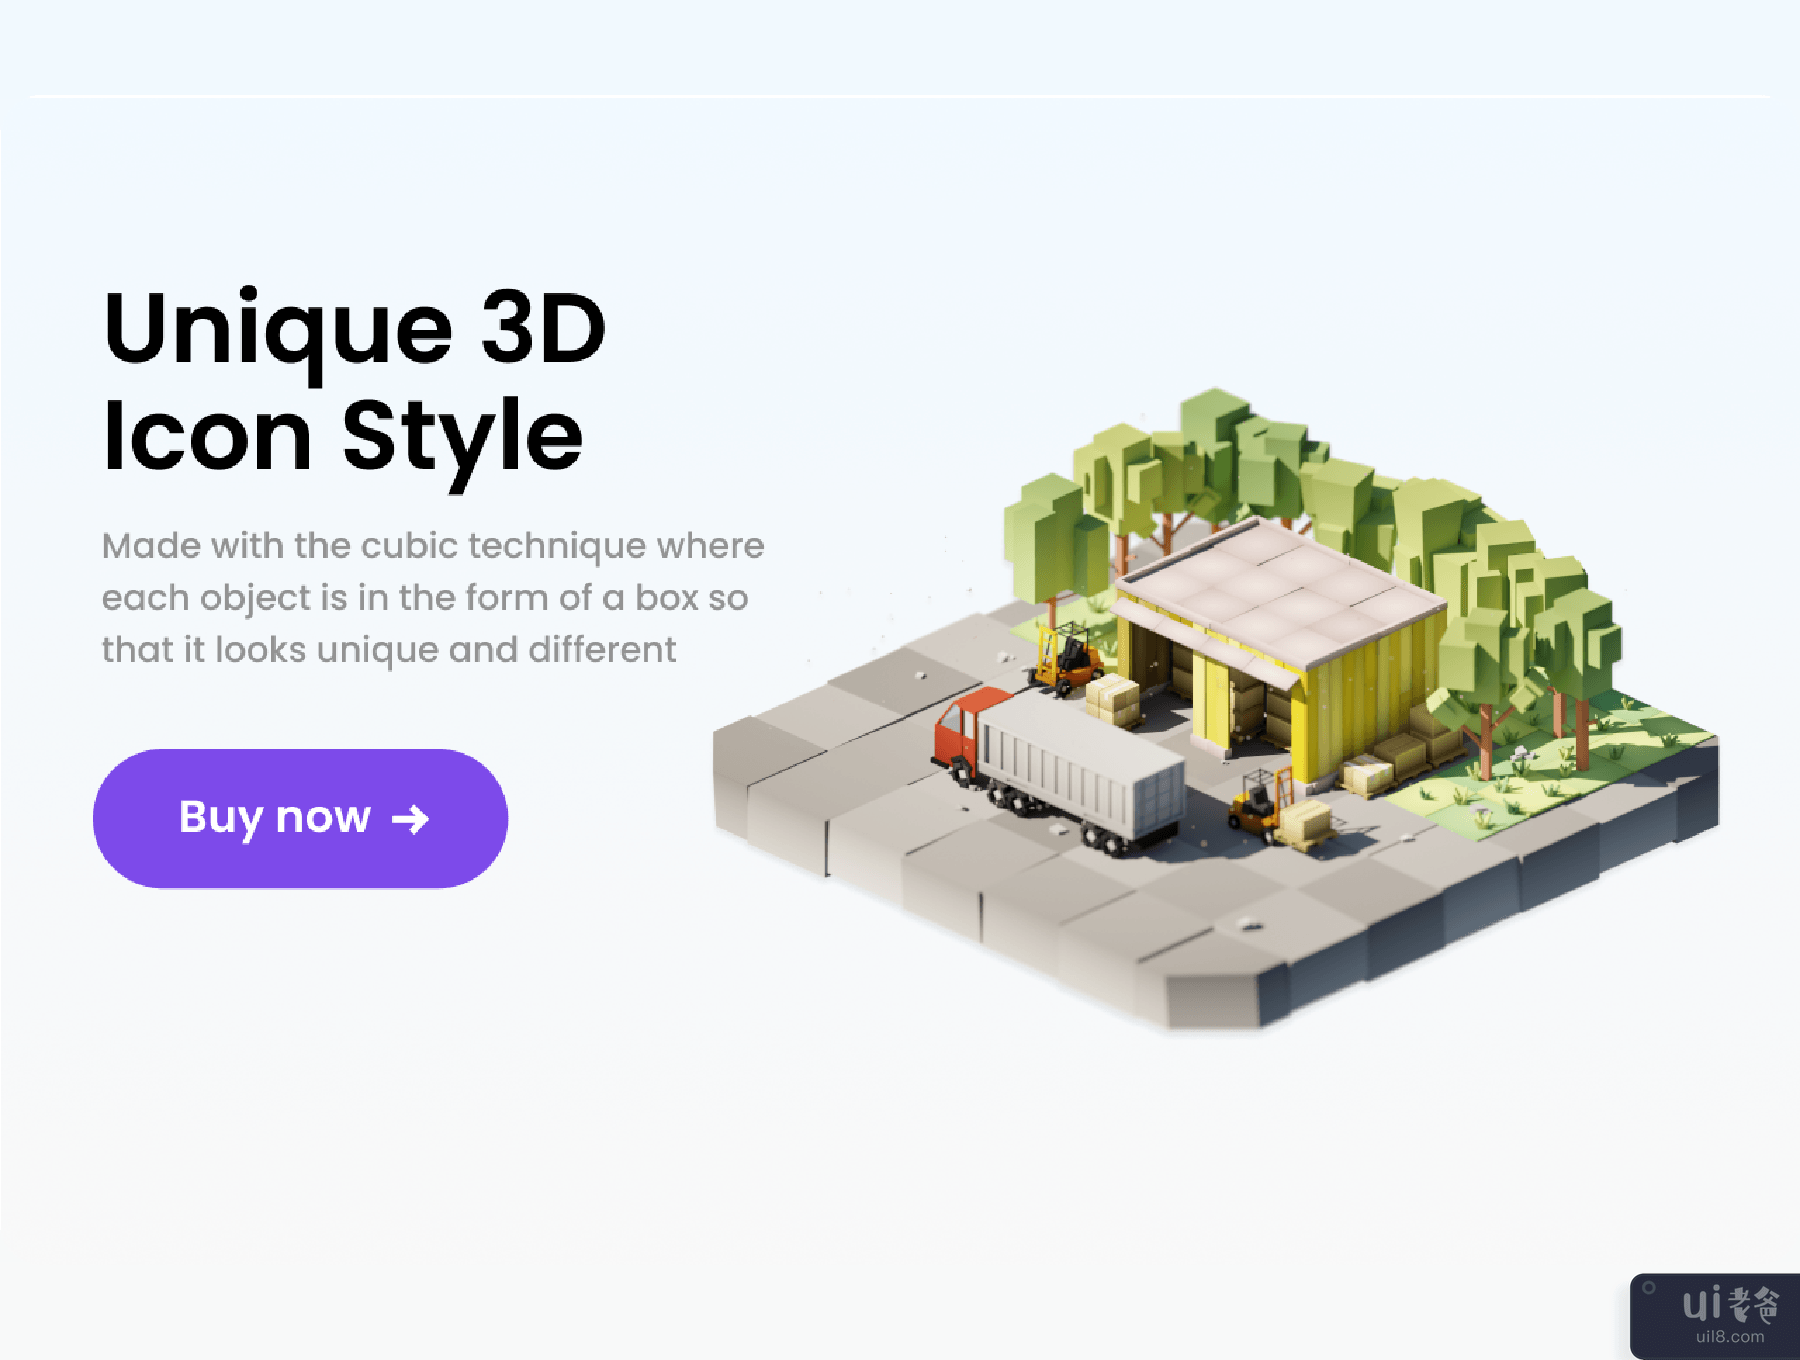 仓库 3D 插画 (Warehouse 3D Illustration)插图4